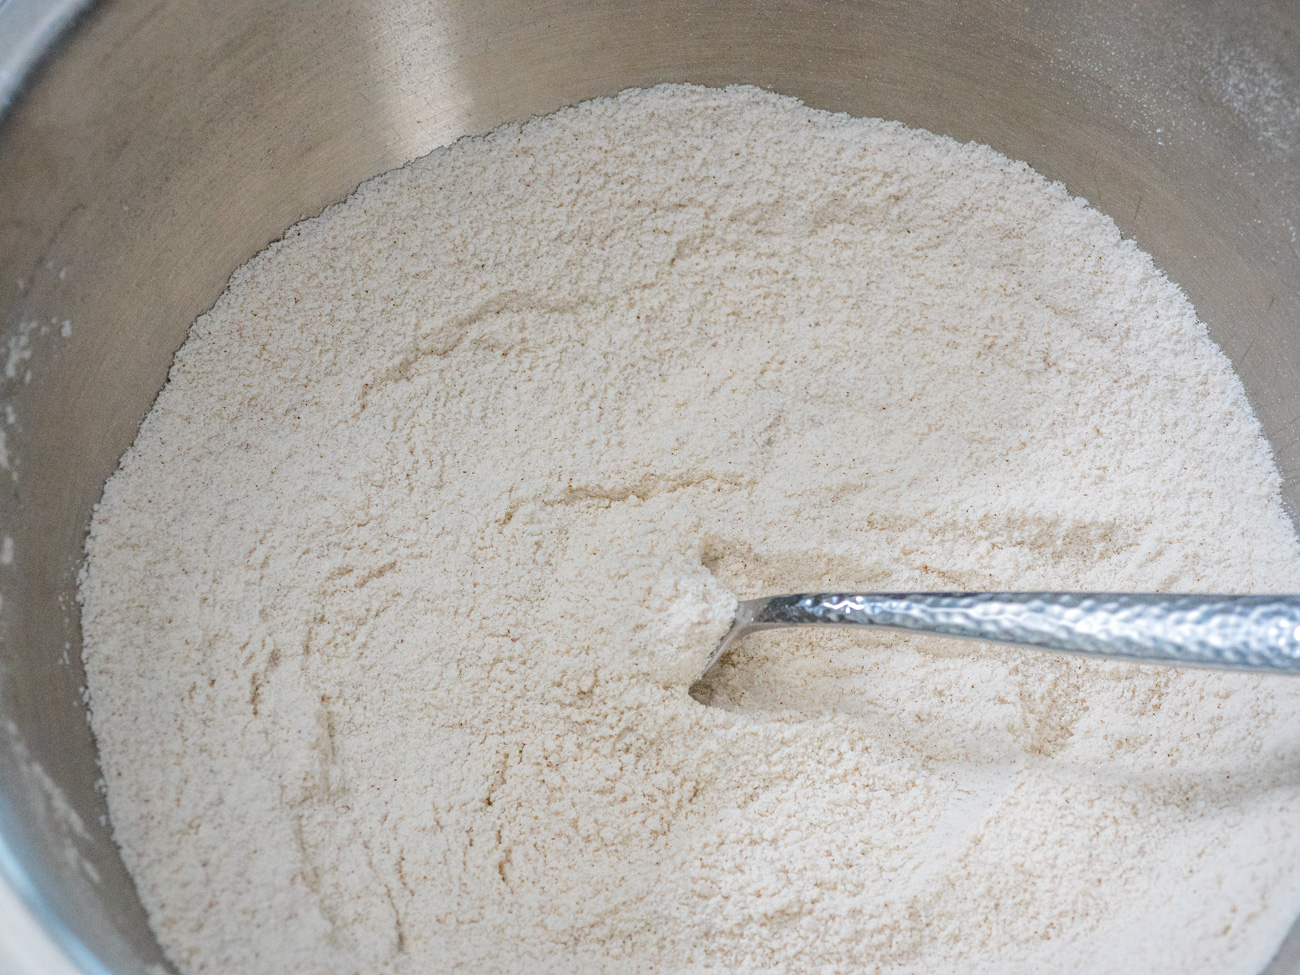 klop in een grote kom meel, suiker, bakpoeder, zuiveringszout, zout en kaneel samen.